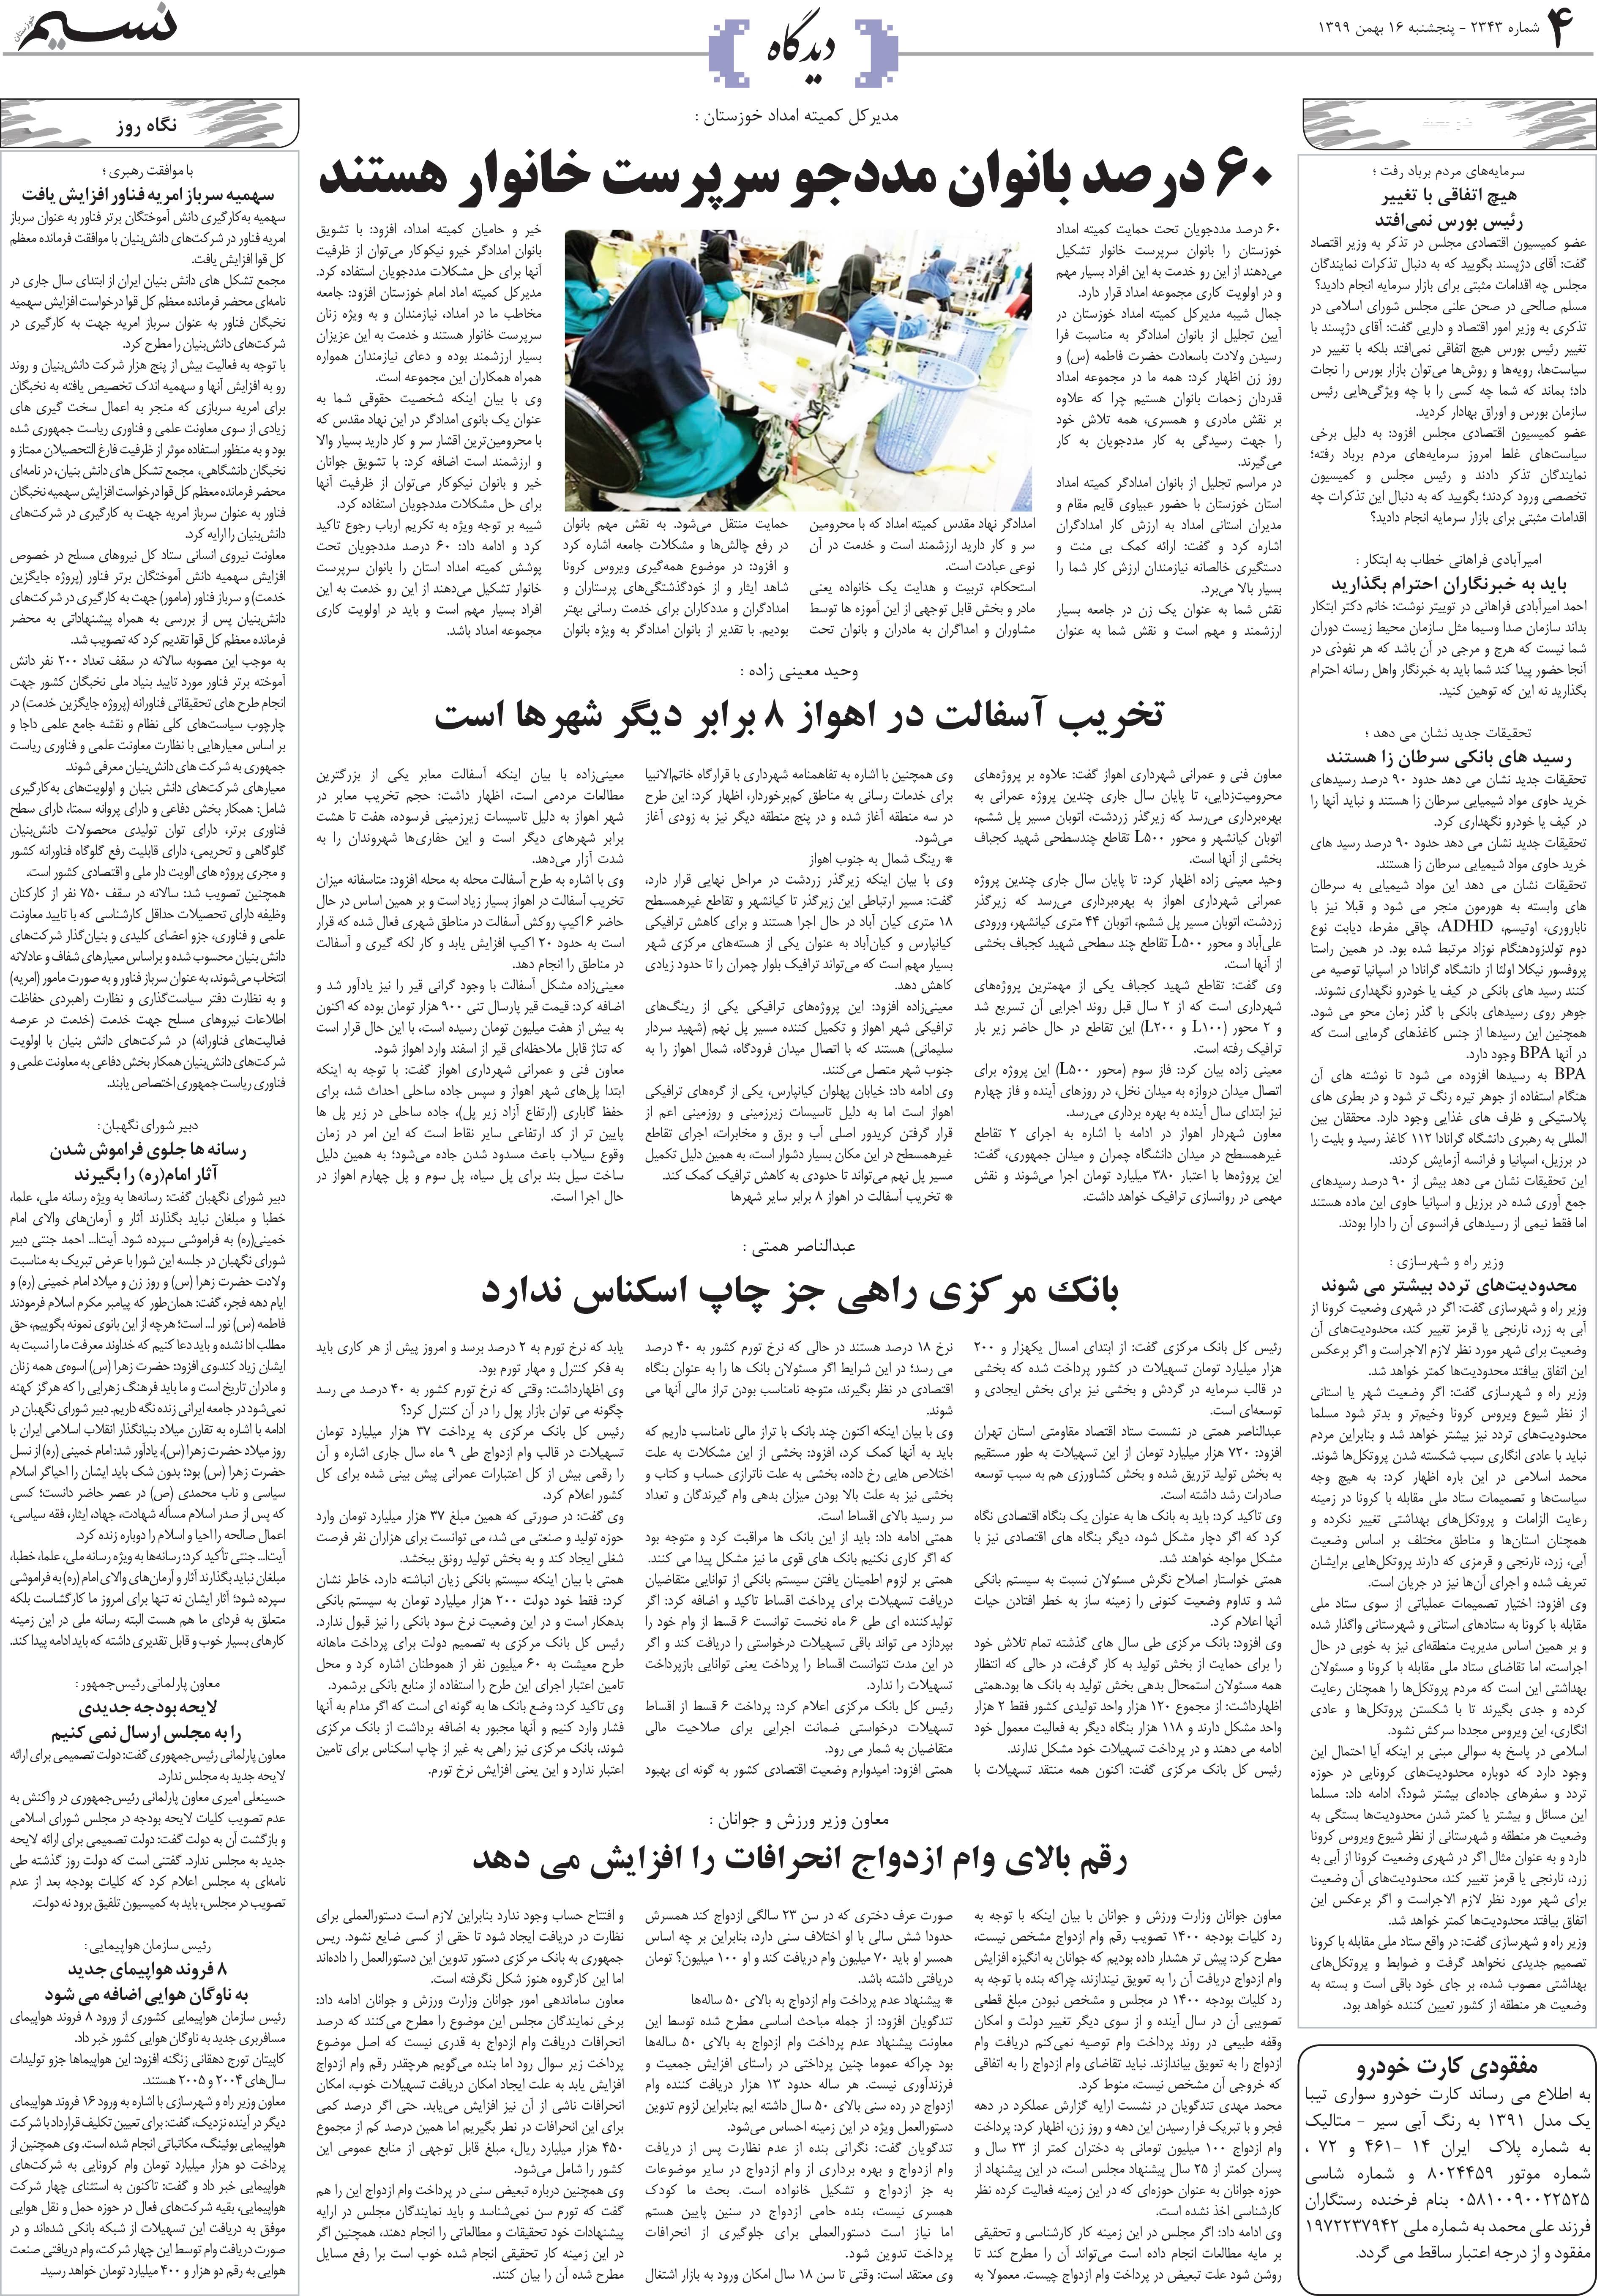 صفحه دیدگاه روزنامه نسیم شماره 2343